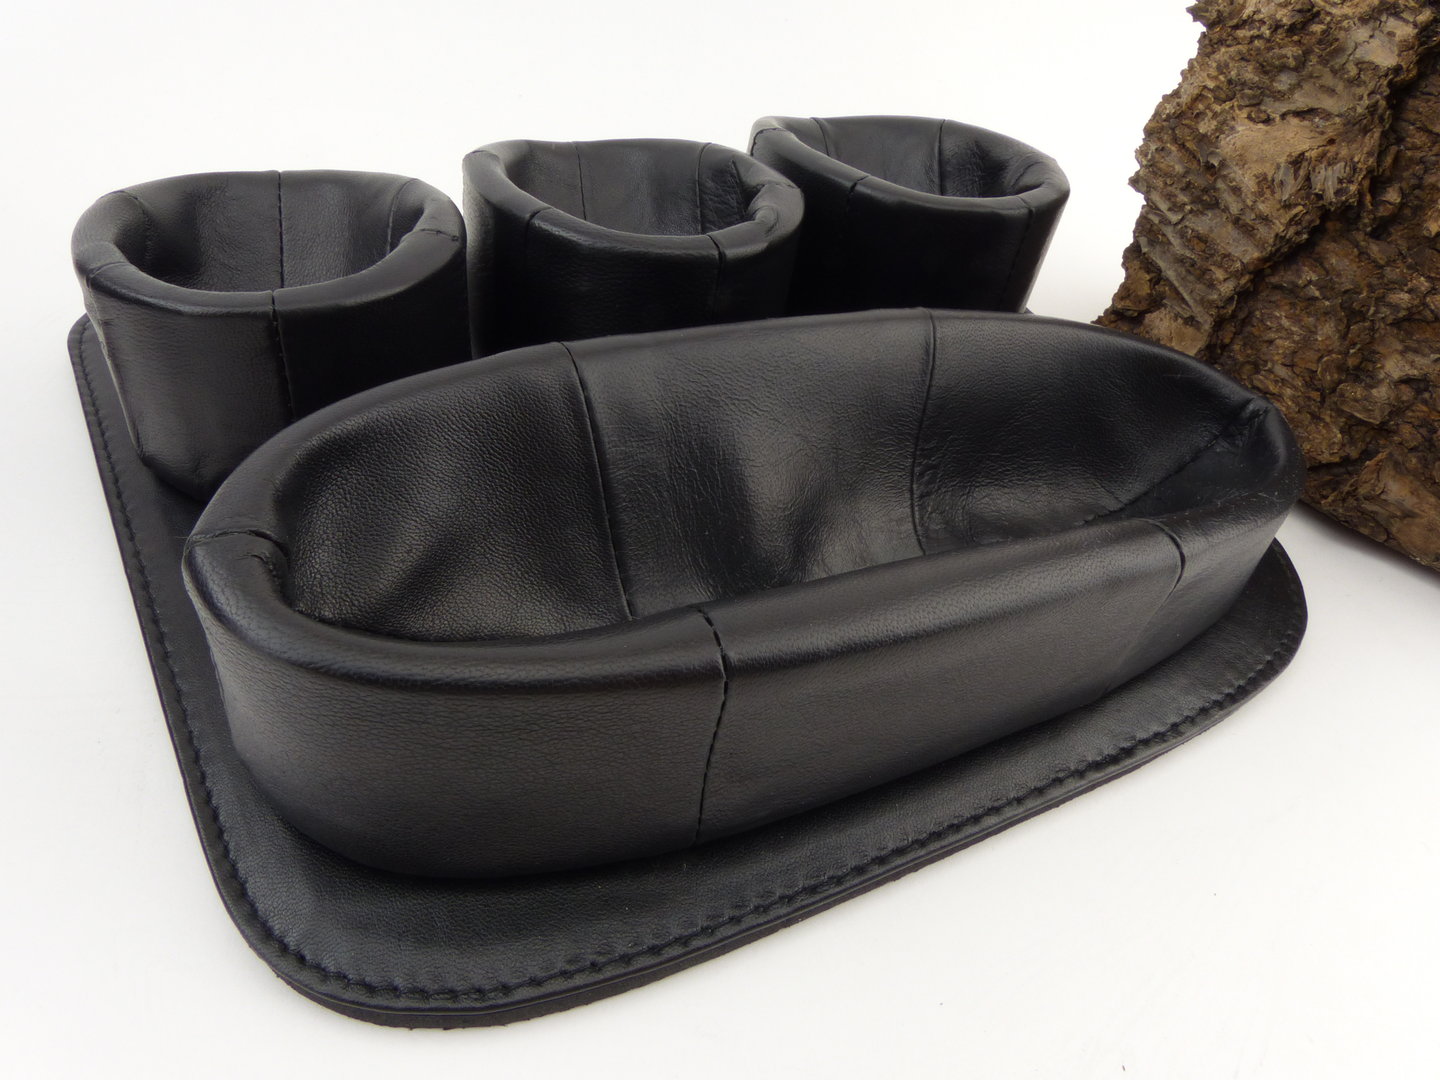 Pfeifenständer für eine Pfeife aus Leder in schwarz Online Kaufen